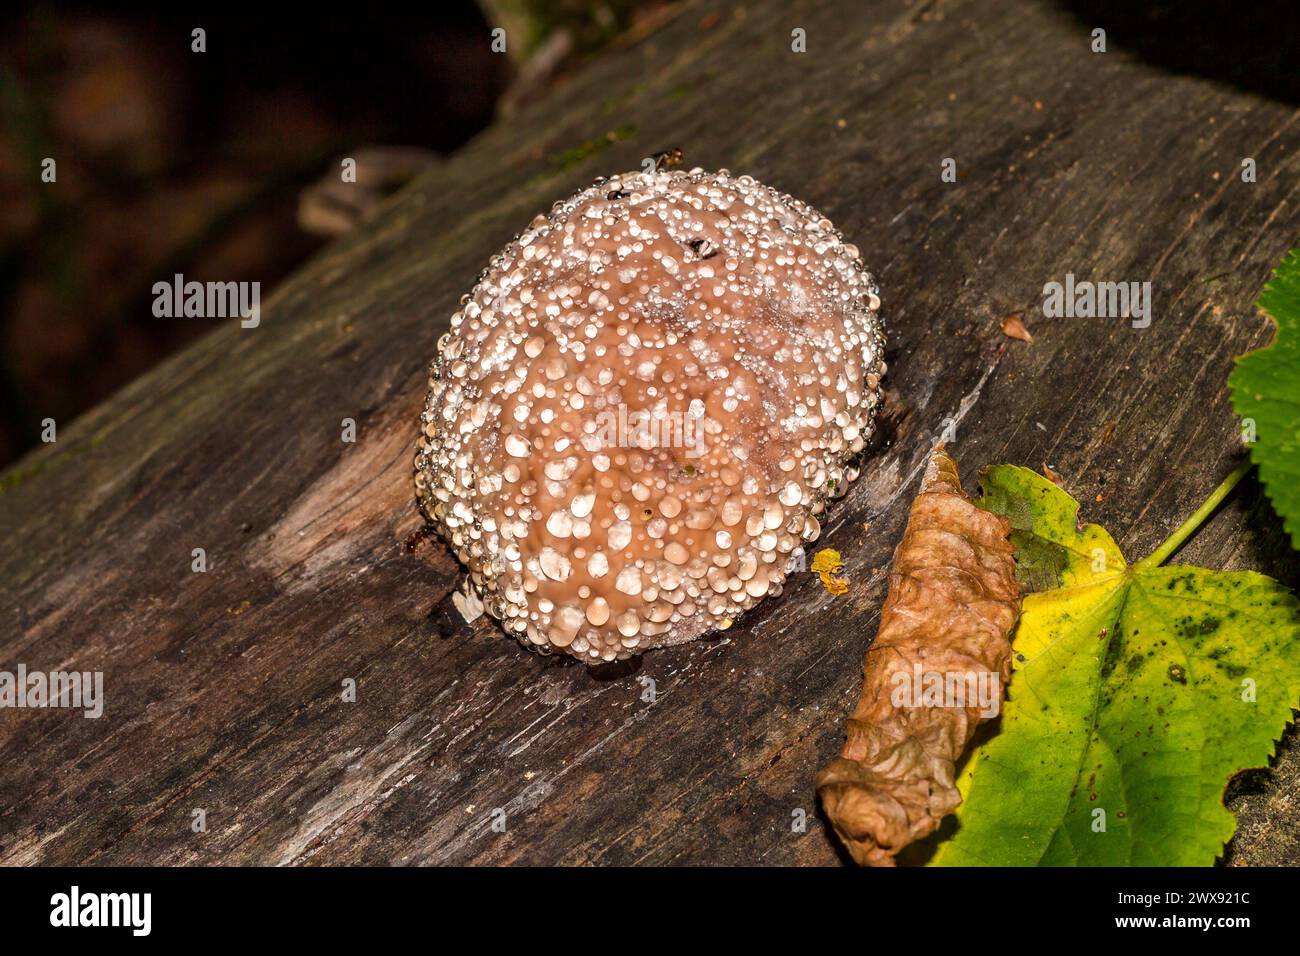 Rotgürtelkonkenpilz (Fomitopsis pinicola) - ein Trauerpilz - ein Pilz, der auf einem faulen Stumpf wächst und Wassertropfen absondert. Allgemeine Ansicht Stockfoto